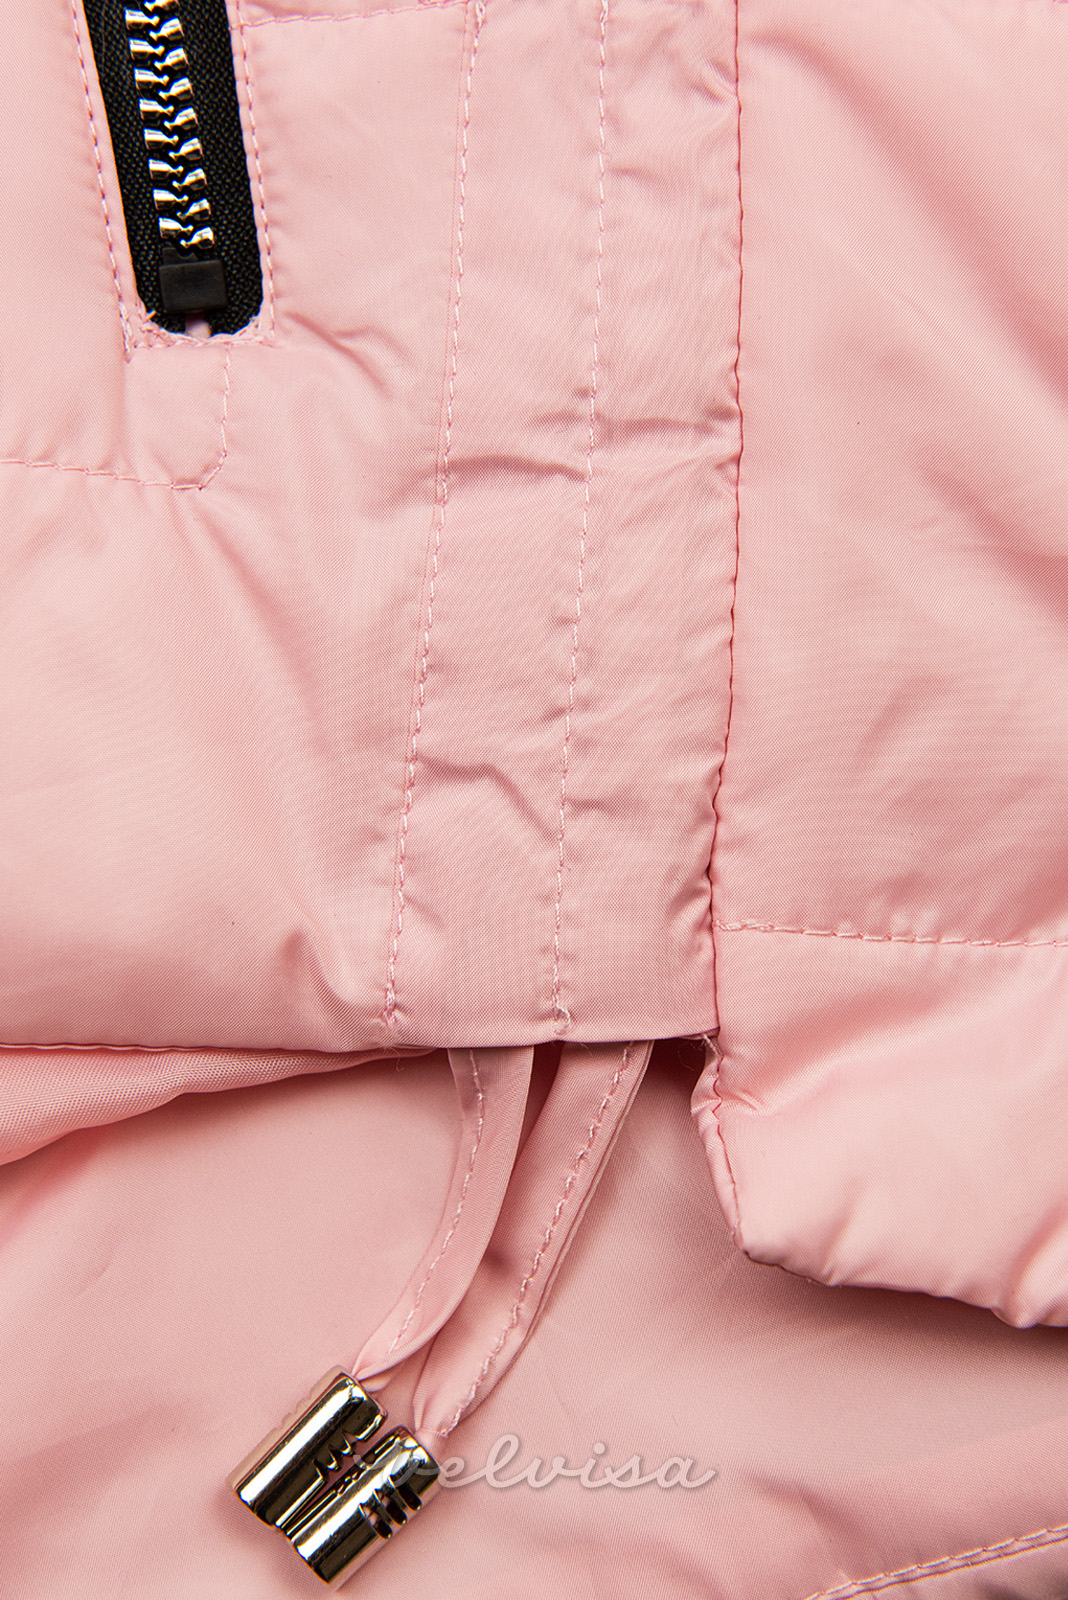 Rožnata jakna s kapuco